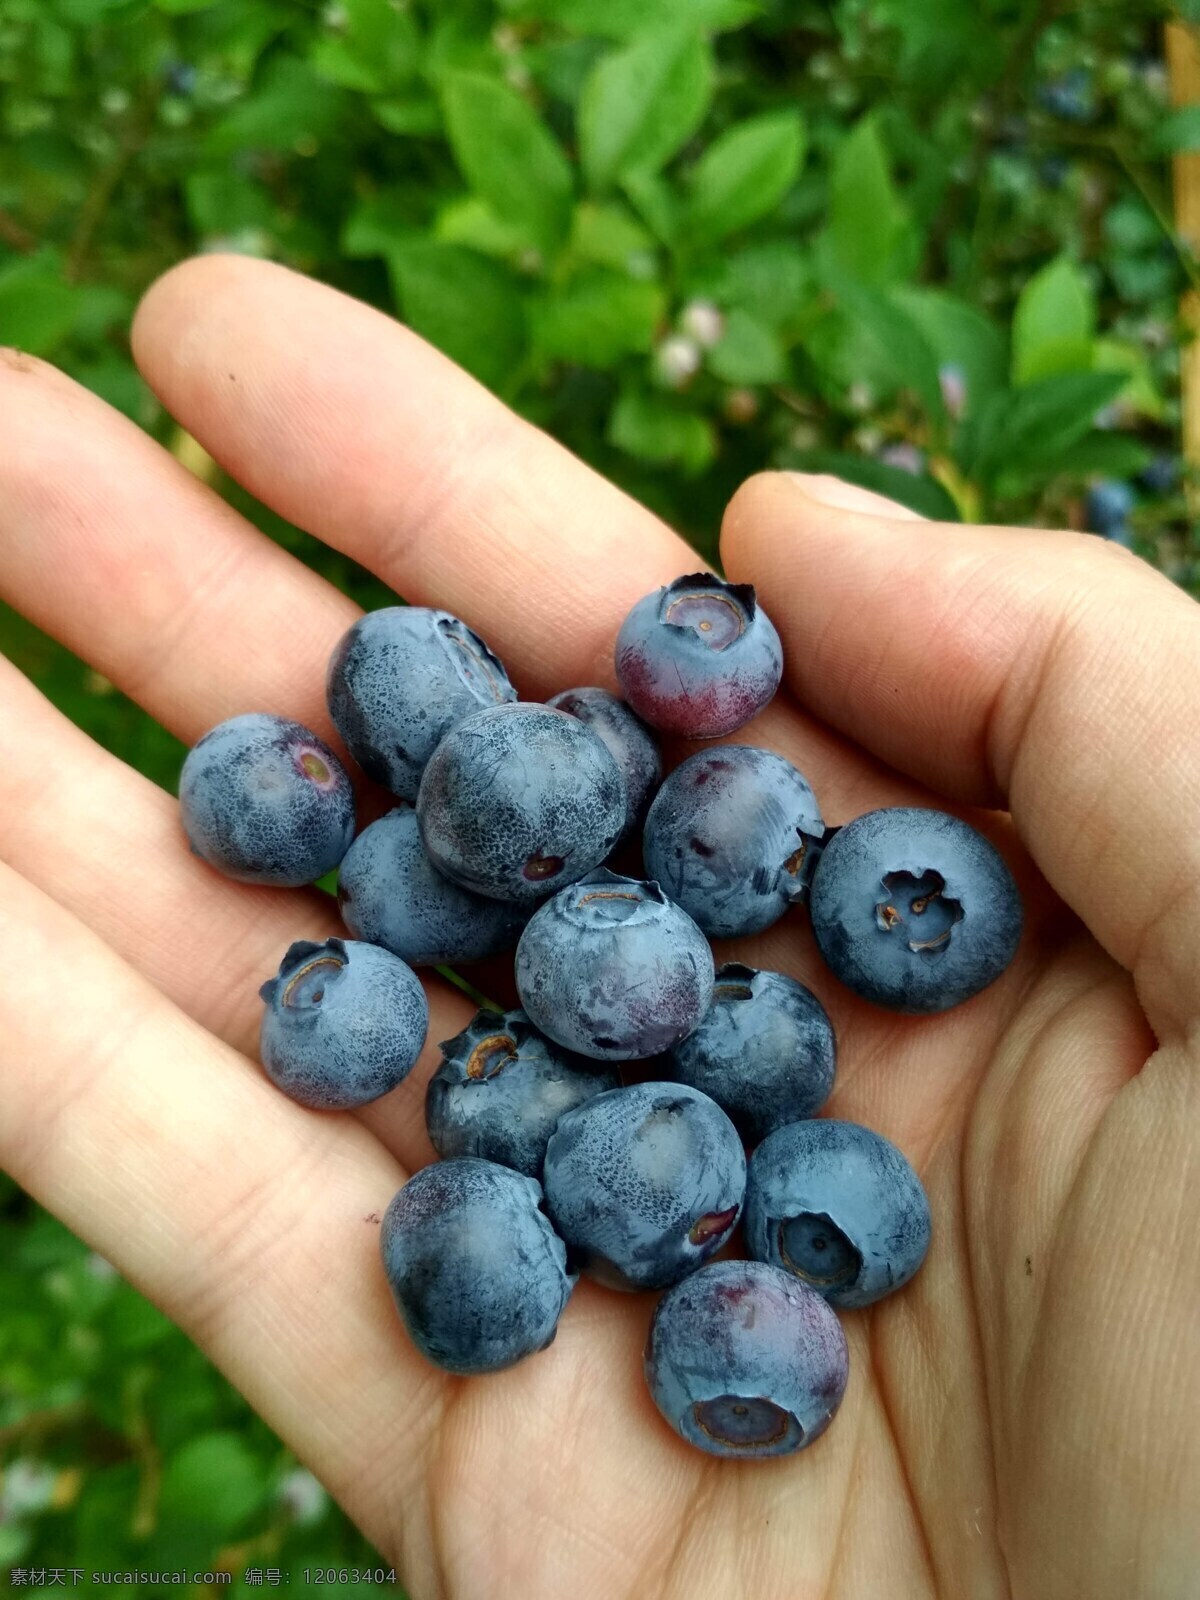 蓝莓图片 蓝莓 蓝莓树 树上 树枝 绿叶 树莓 草莓 水果 奇异果 果子 果实 蔬菜 果蔬 果树 果核 种子 植物 作物 经济作物 果农 有机水果 绿色水果 农产品 生物世界